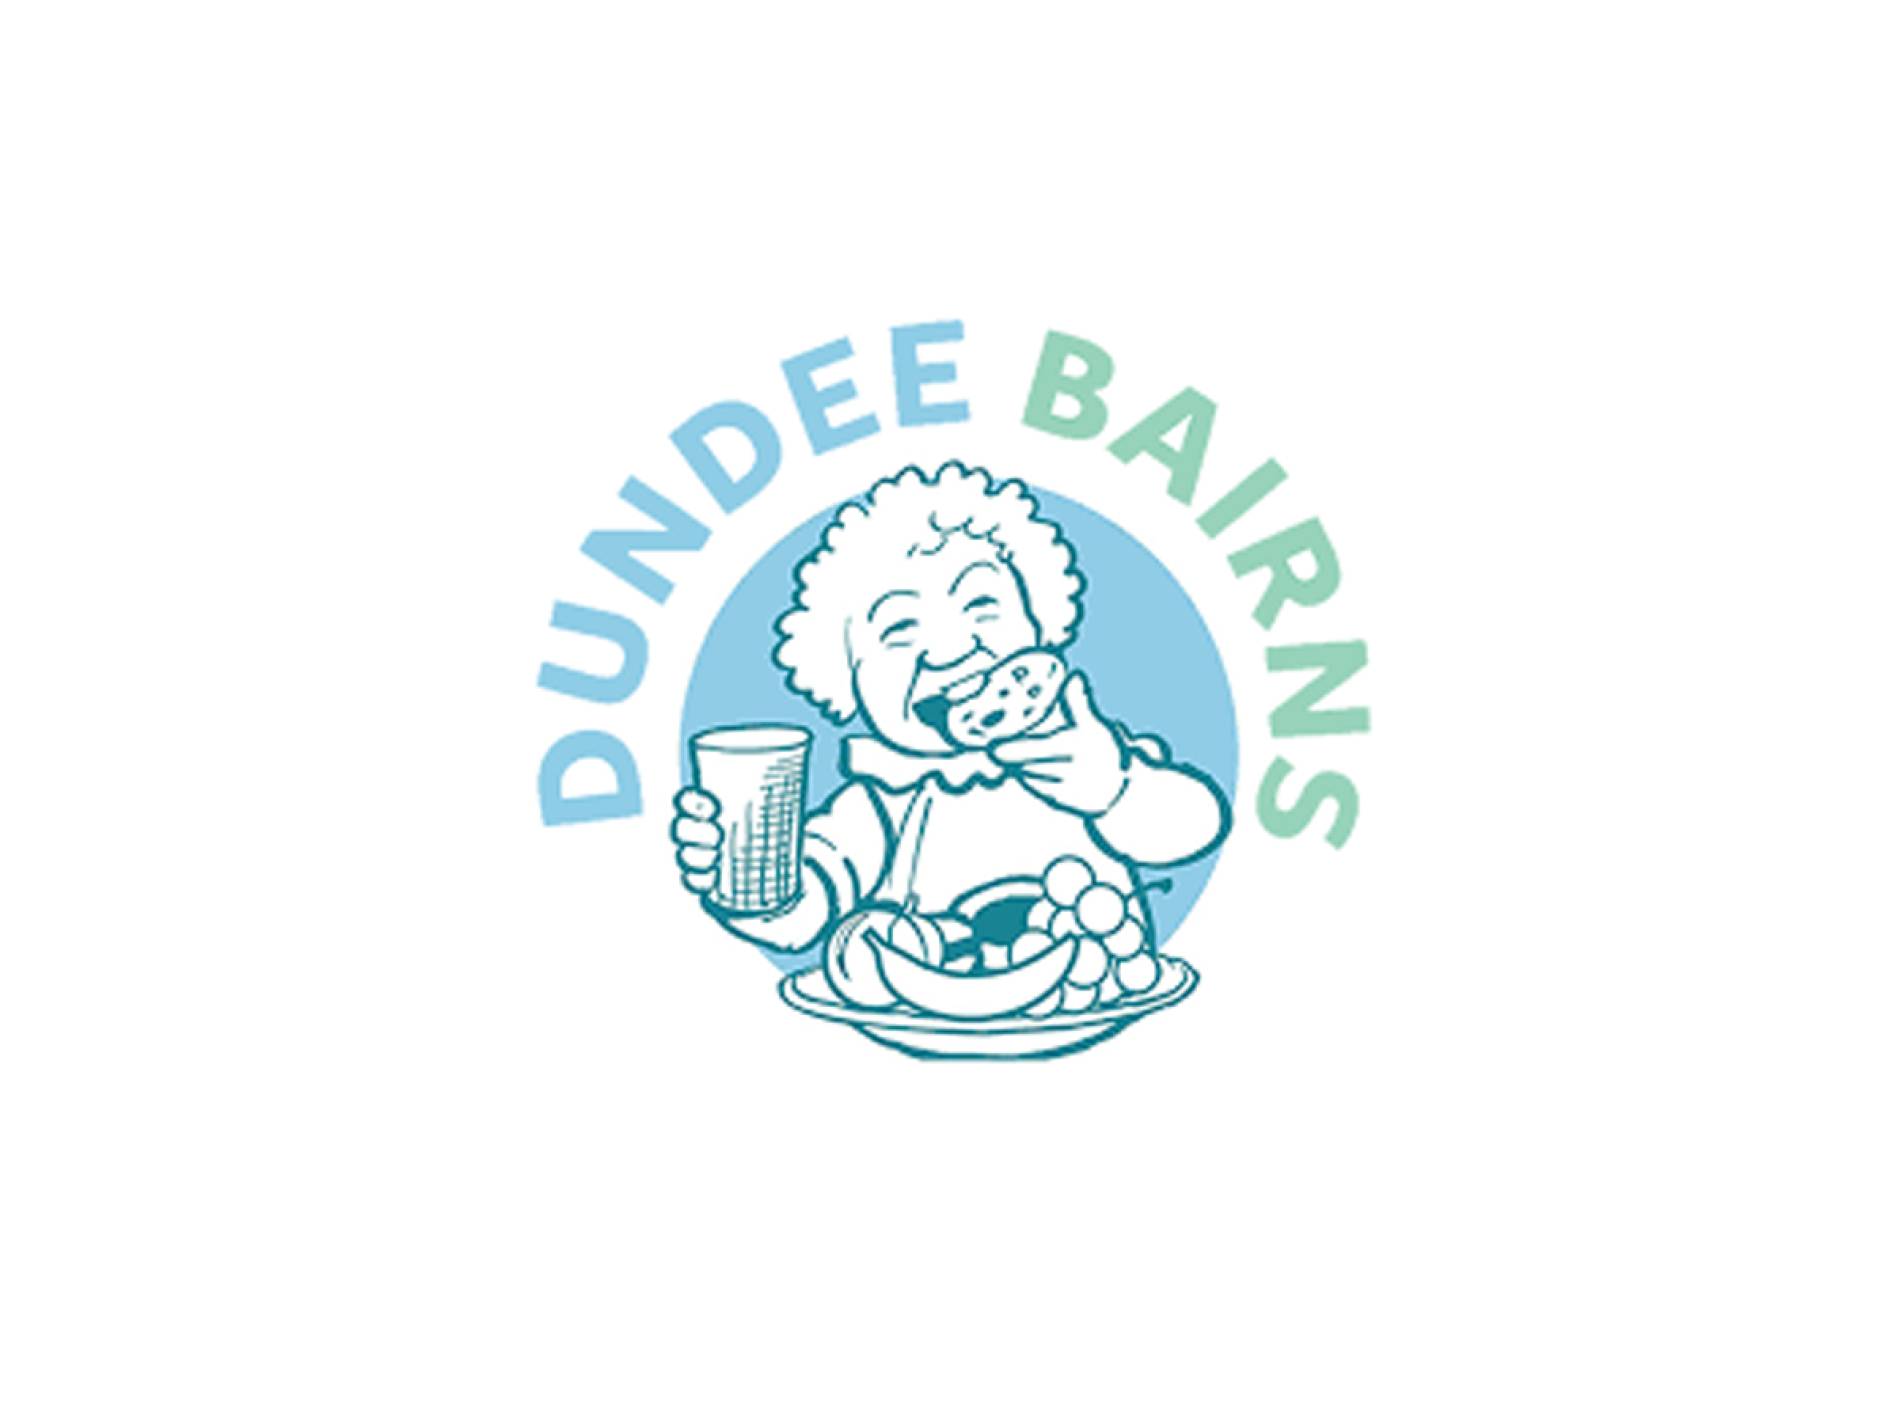 Dundee Bairns